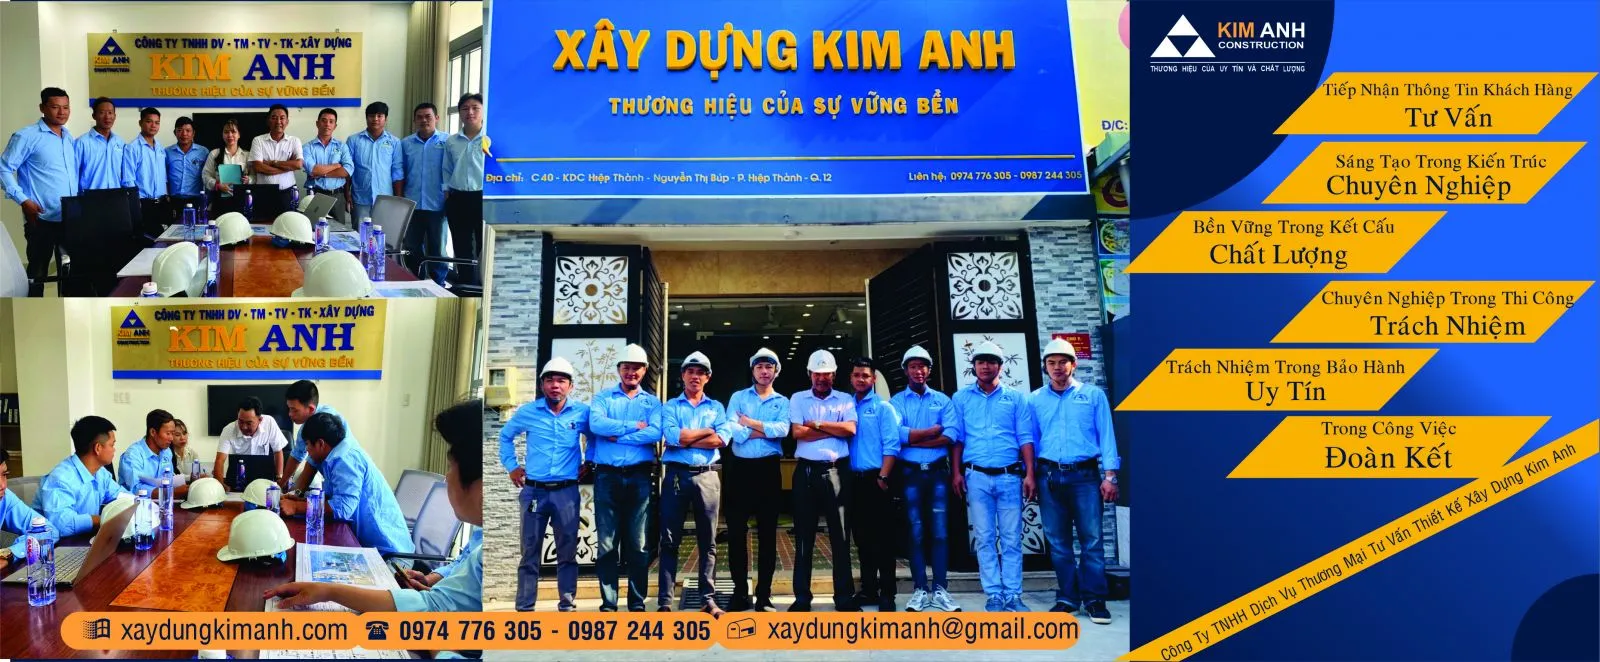 Xây Dựng Kim Anh: Công ty xây dựng nhà uy tín Quận 11 - xaydungkimanh.com